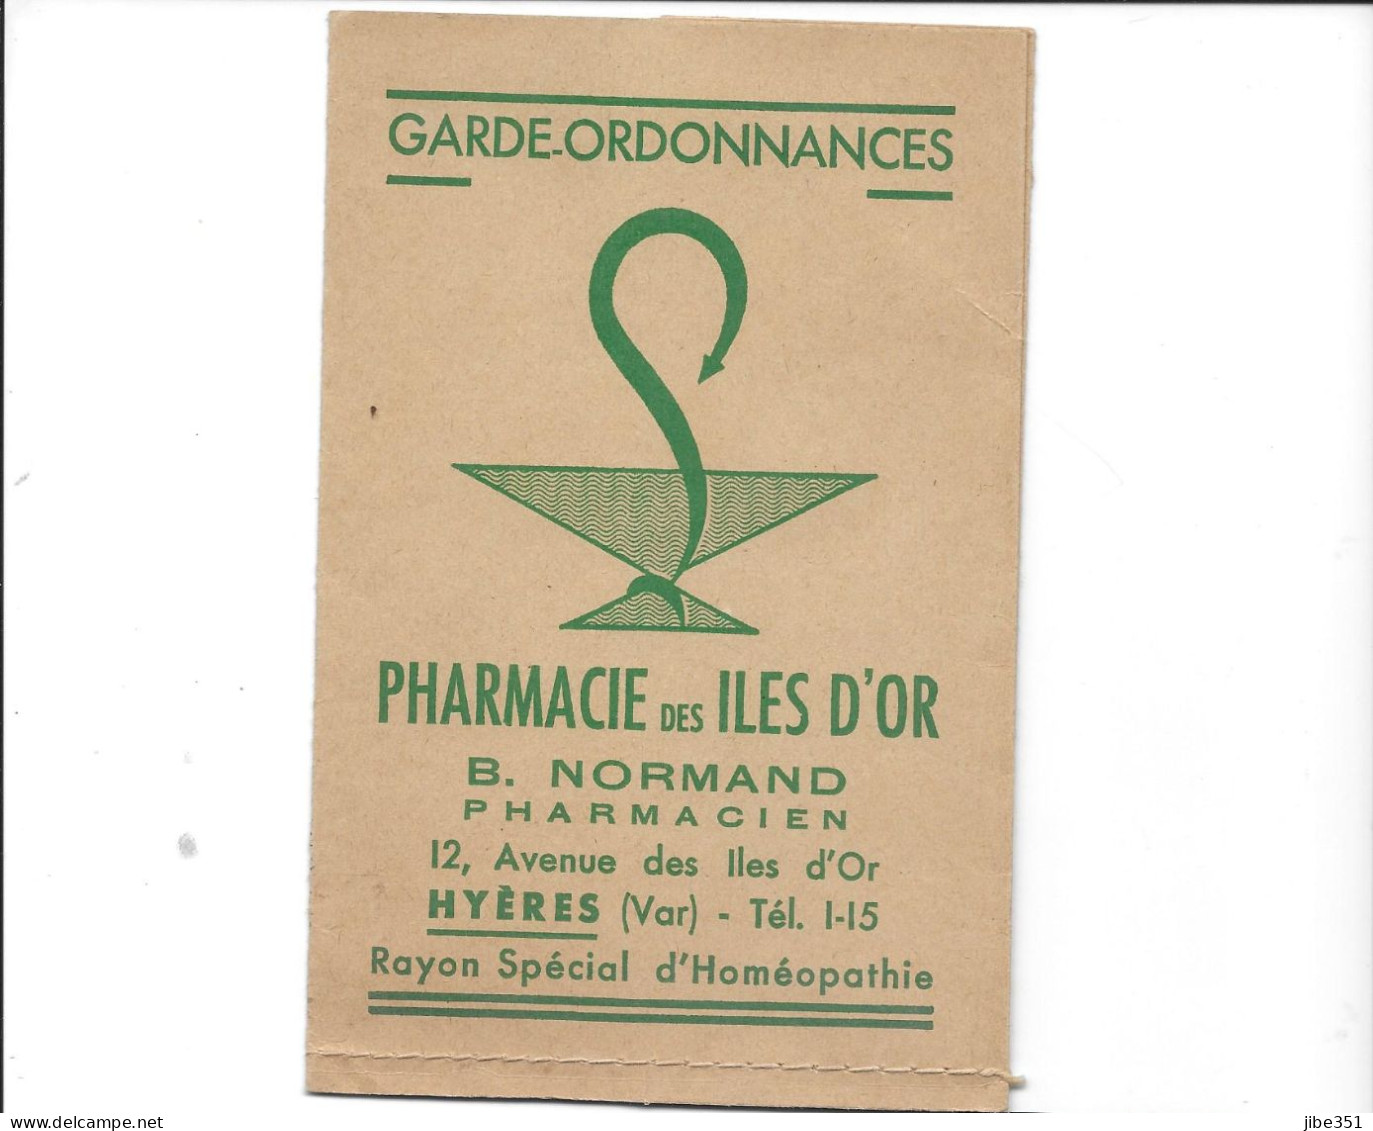 Garde Ordonnances  Pharmacie Des Iles D'or Hyères - Werbung